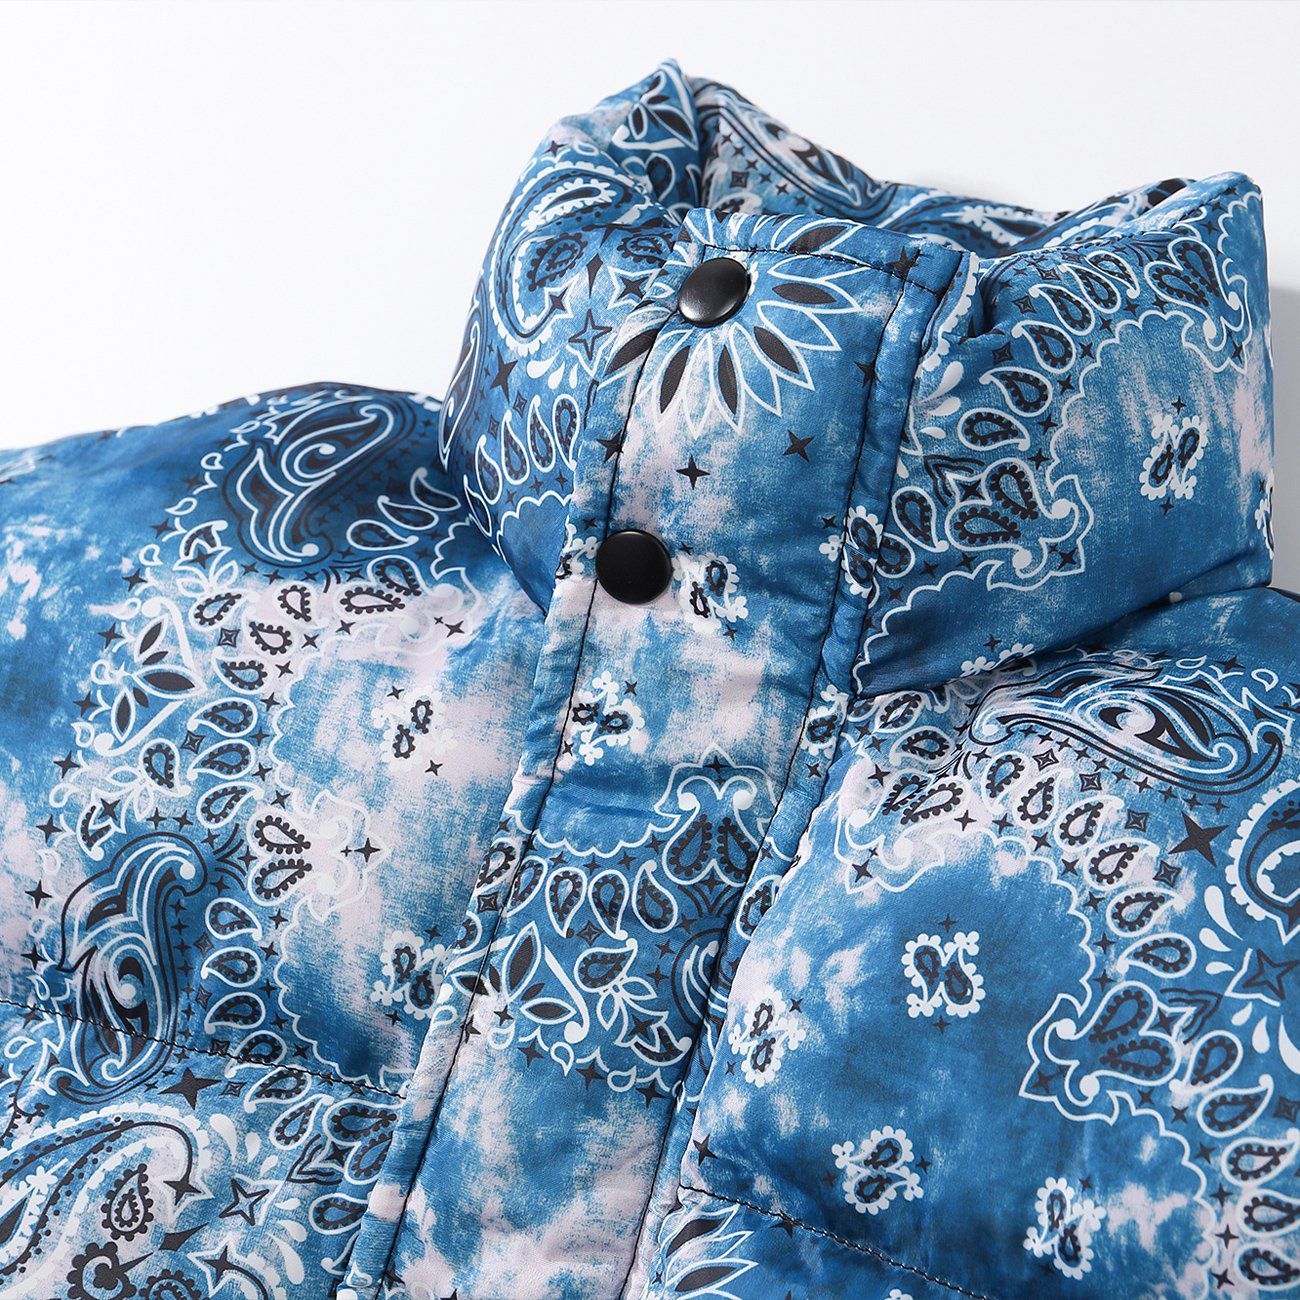 LUXENFY™ - Bandana Print Tie Dye Winter Coat luxenfy.com